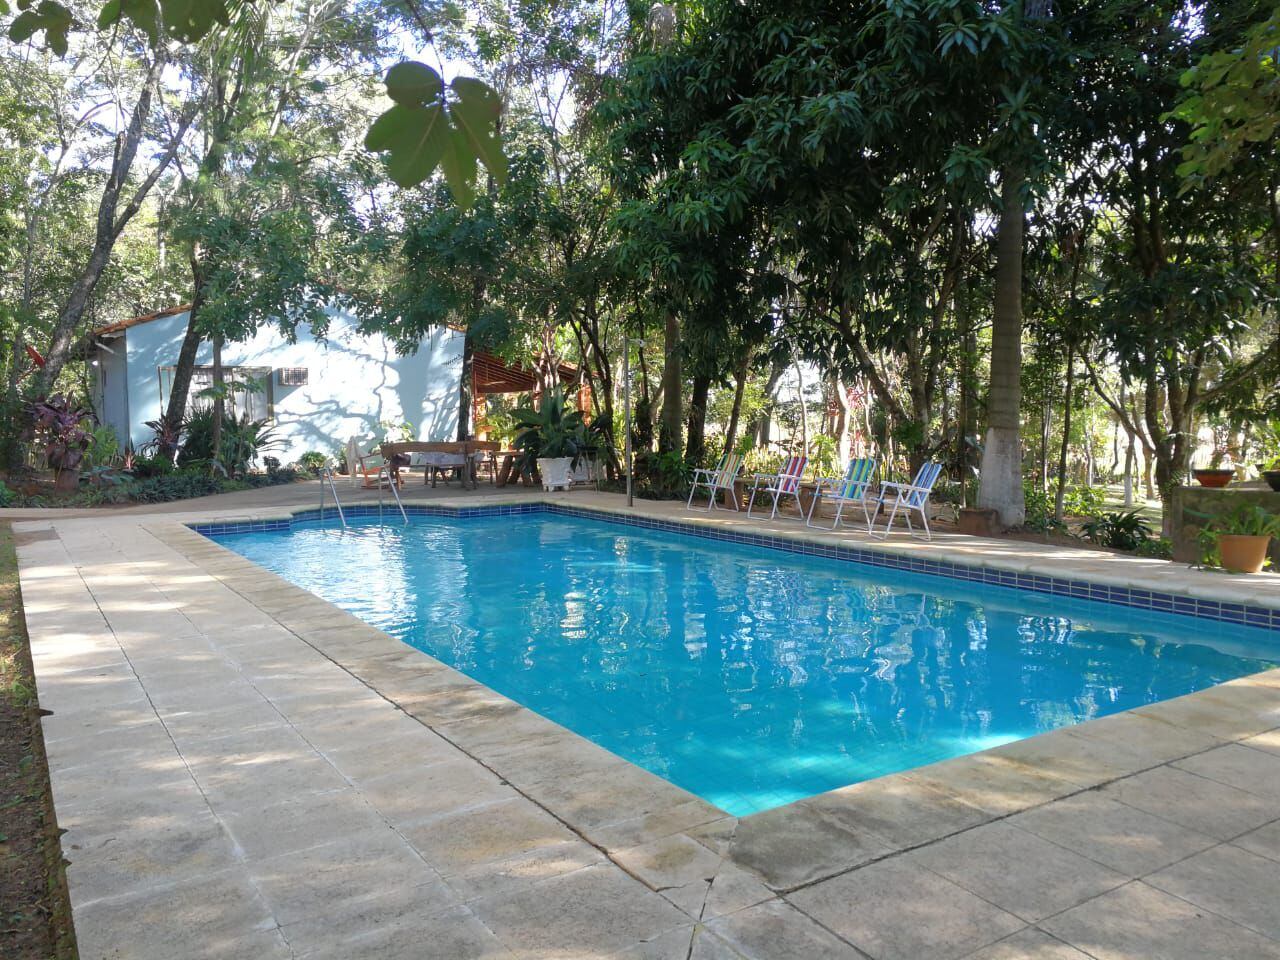 El complejo Mboity cuenta con una hermosa piscina, casita de árbol y otros atractivos que son ideales para pasar en familia.